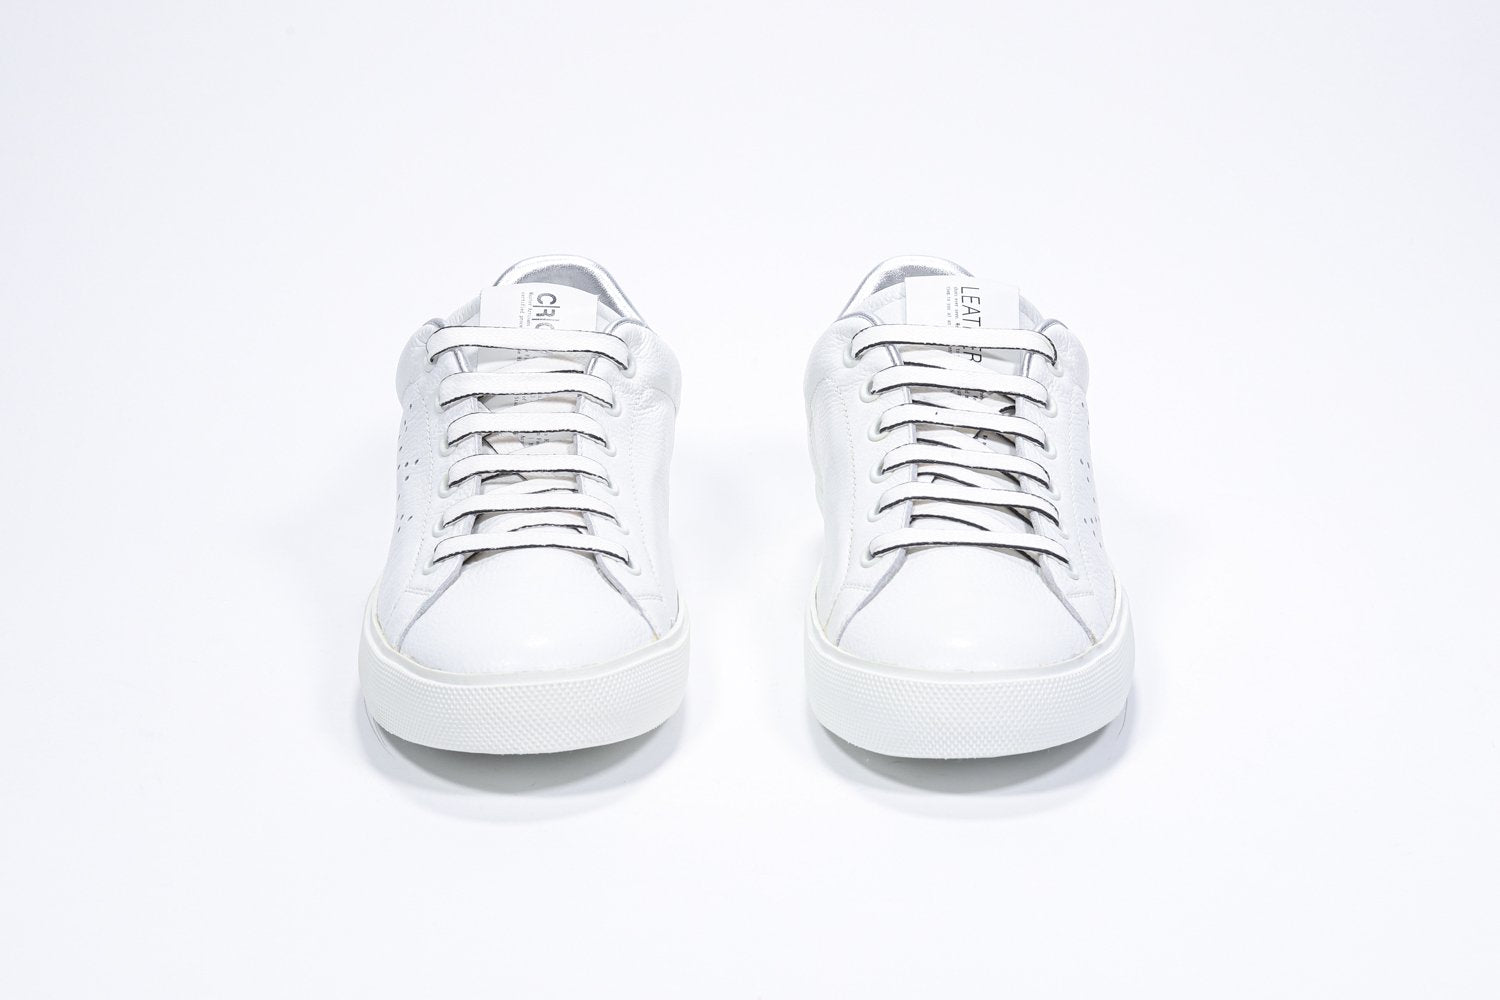 Vista frontale di BASSE  sneaker  bianco con dettagli argento e logo della corona traforata sulla tomaia. Tomaia in pelle e suola in gomma bianca.